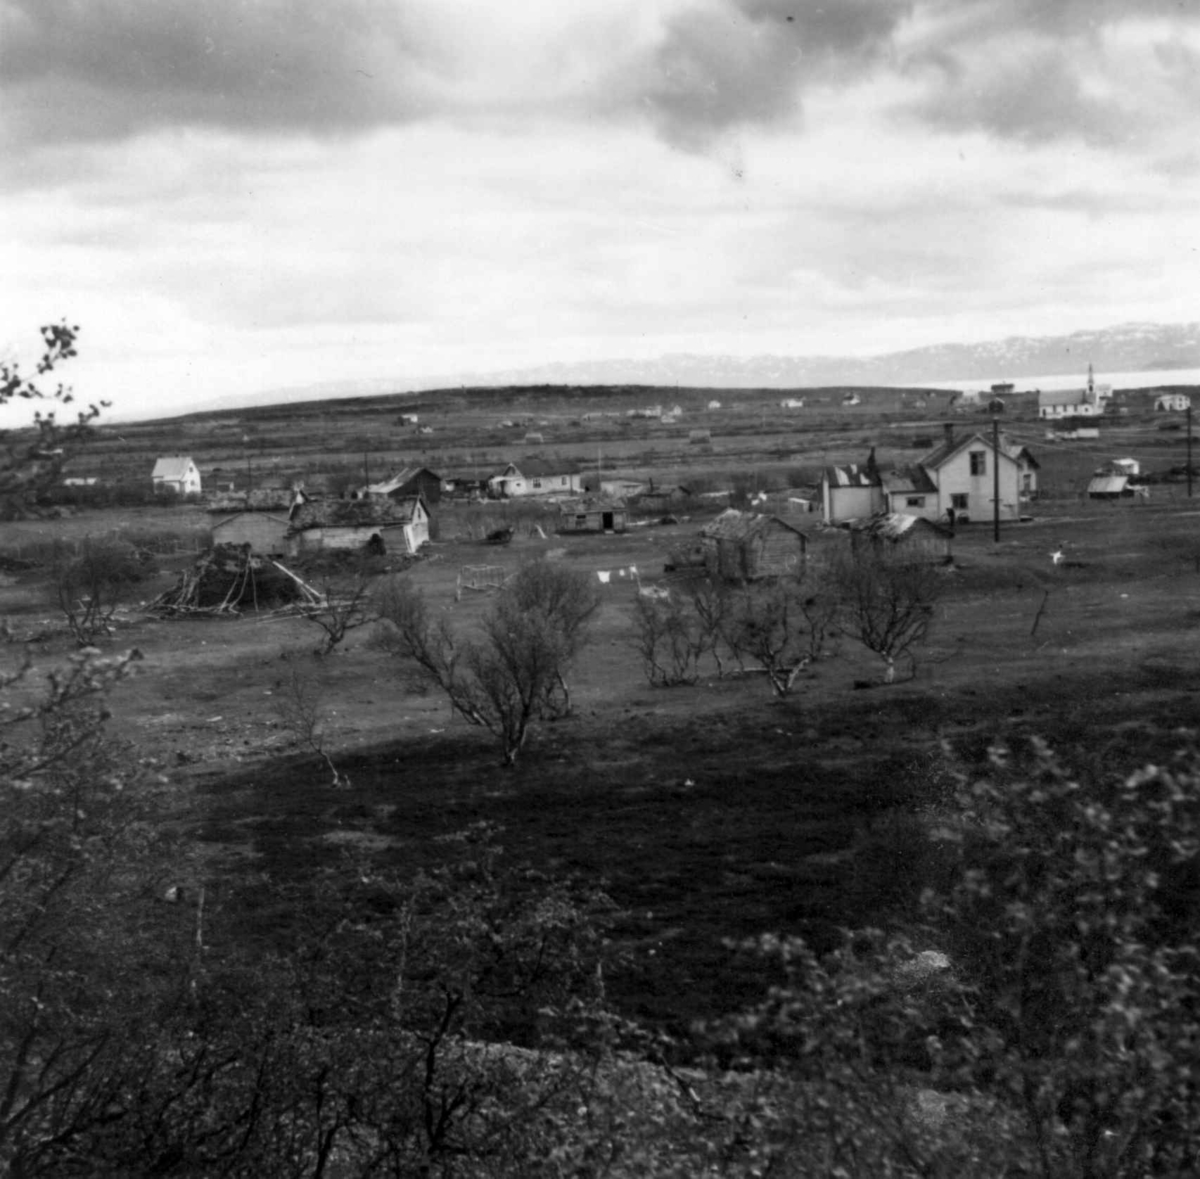 Siribakken, Vestre Jakobselv, Vadsø i Nord-Varanger. Oversiktsbilde, mot syd, med spredt bebyggelse og kirke bak t.h.
Foto ark. Kjell Borgen, 1951.